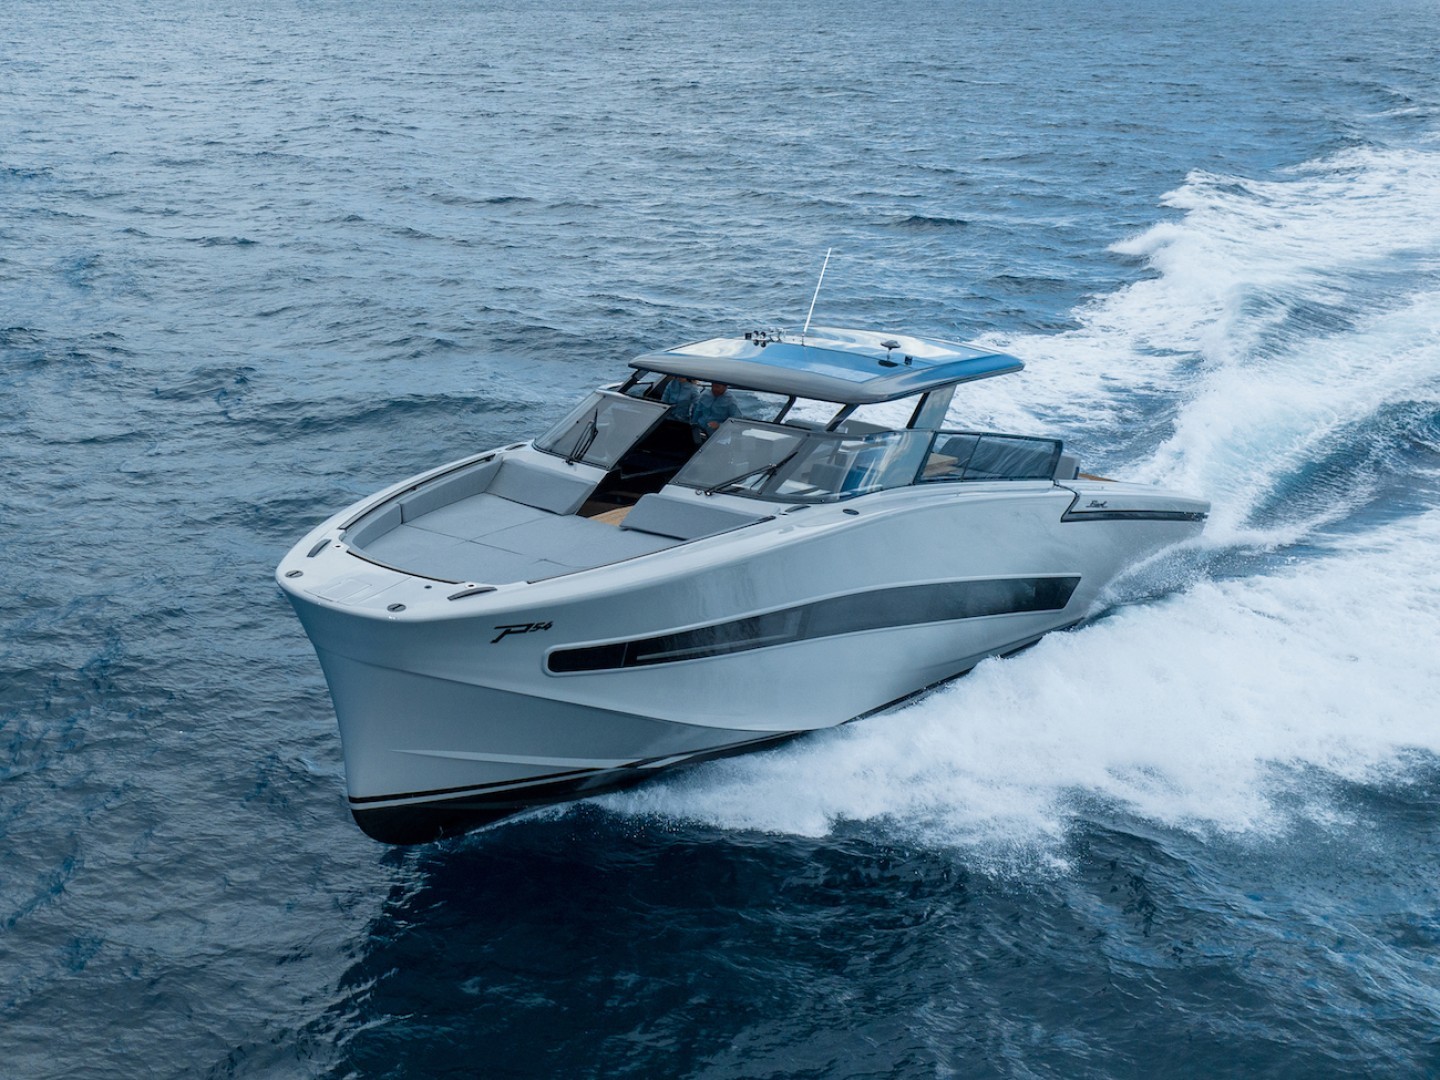 Fiart P54 world premiere at the Genoa Boat Show